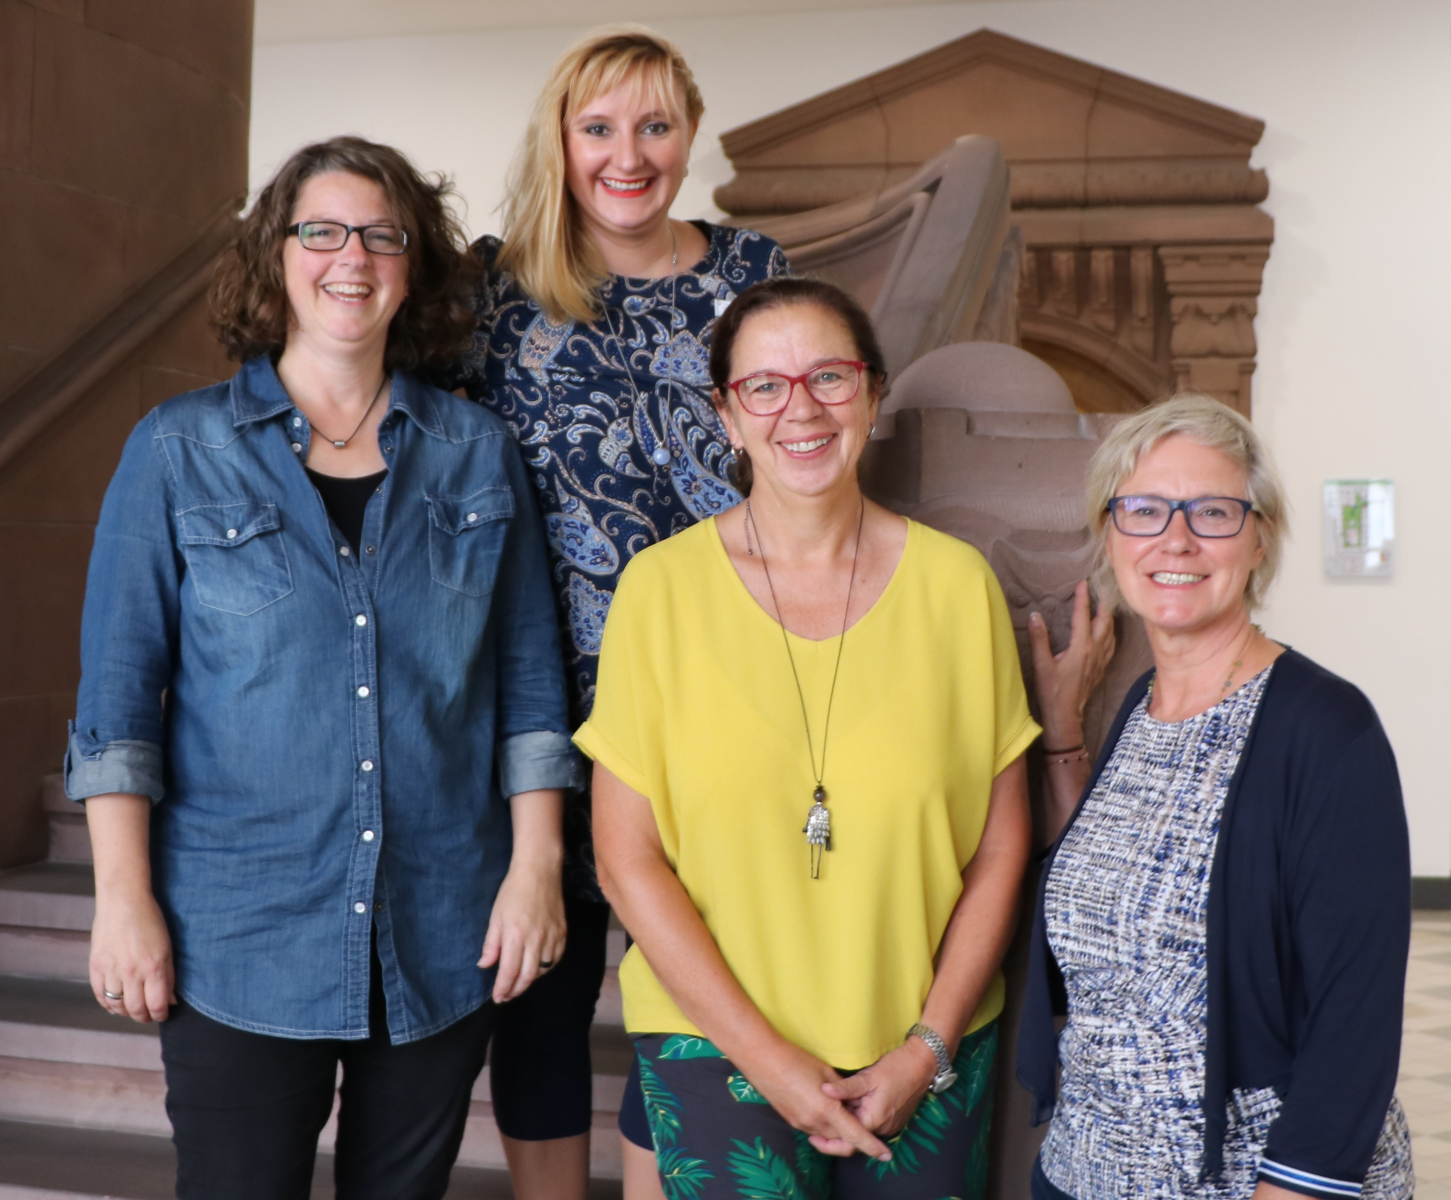 Frauen-Netzwerk „Unternehmerinnen im Gespräch“ in Recklinghausen